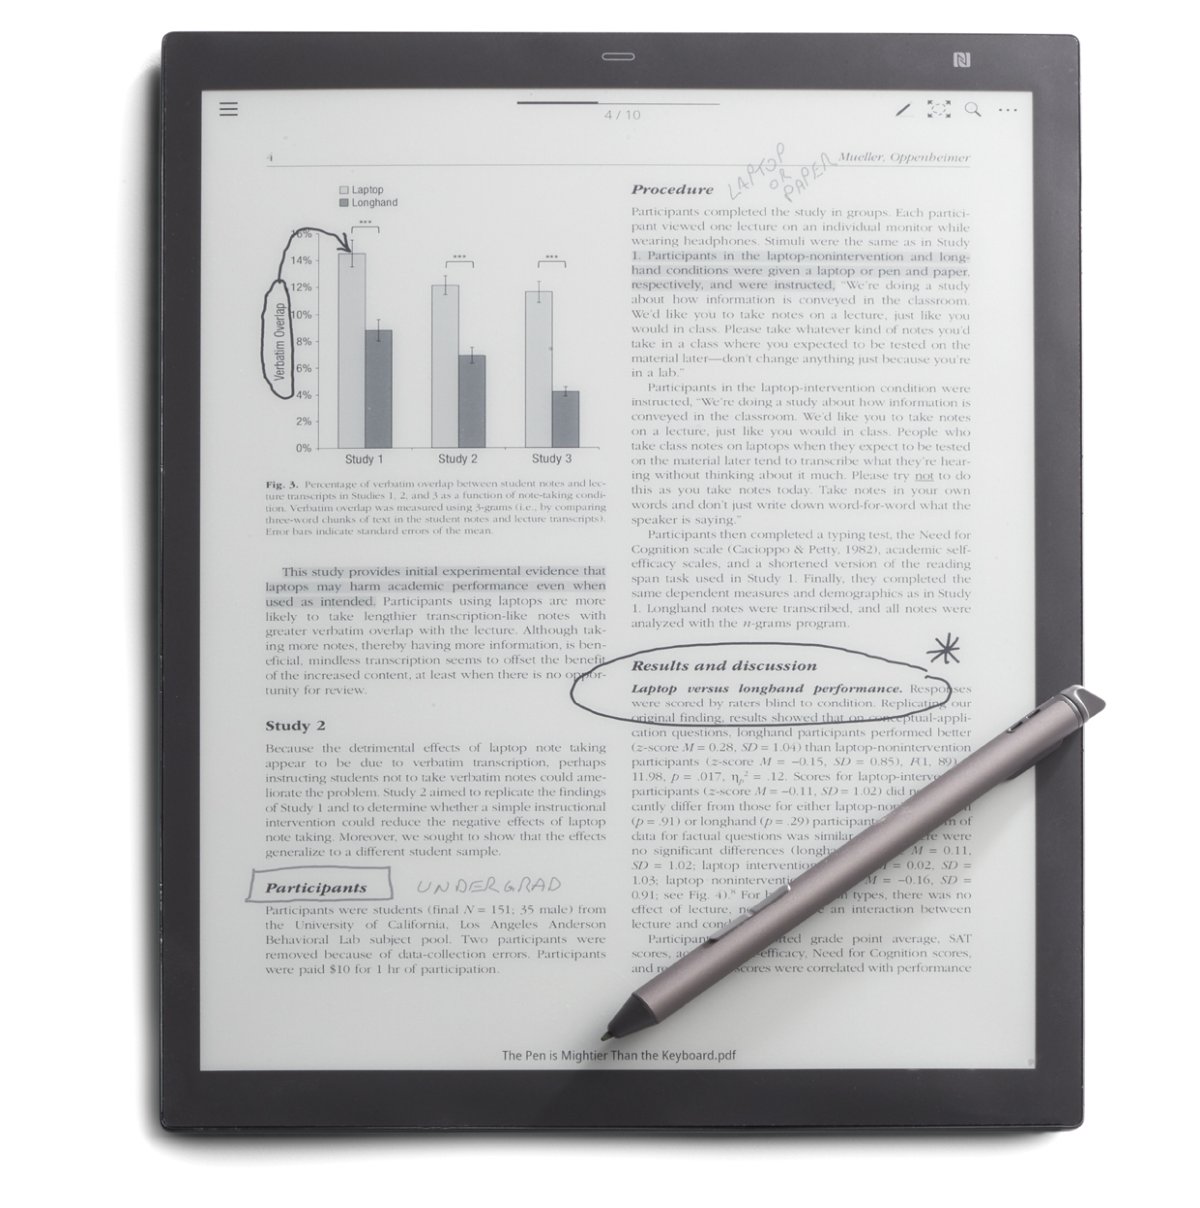 Digital Paper Tablet, un cuaderno digital con tinta electrónica - MuyPymes